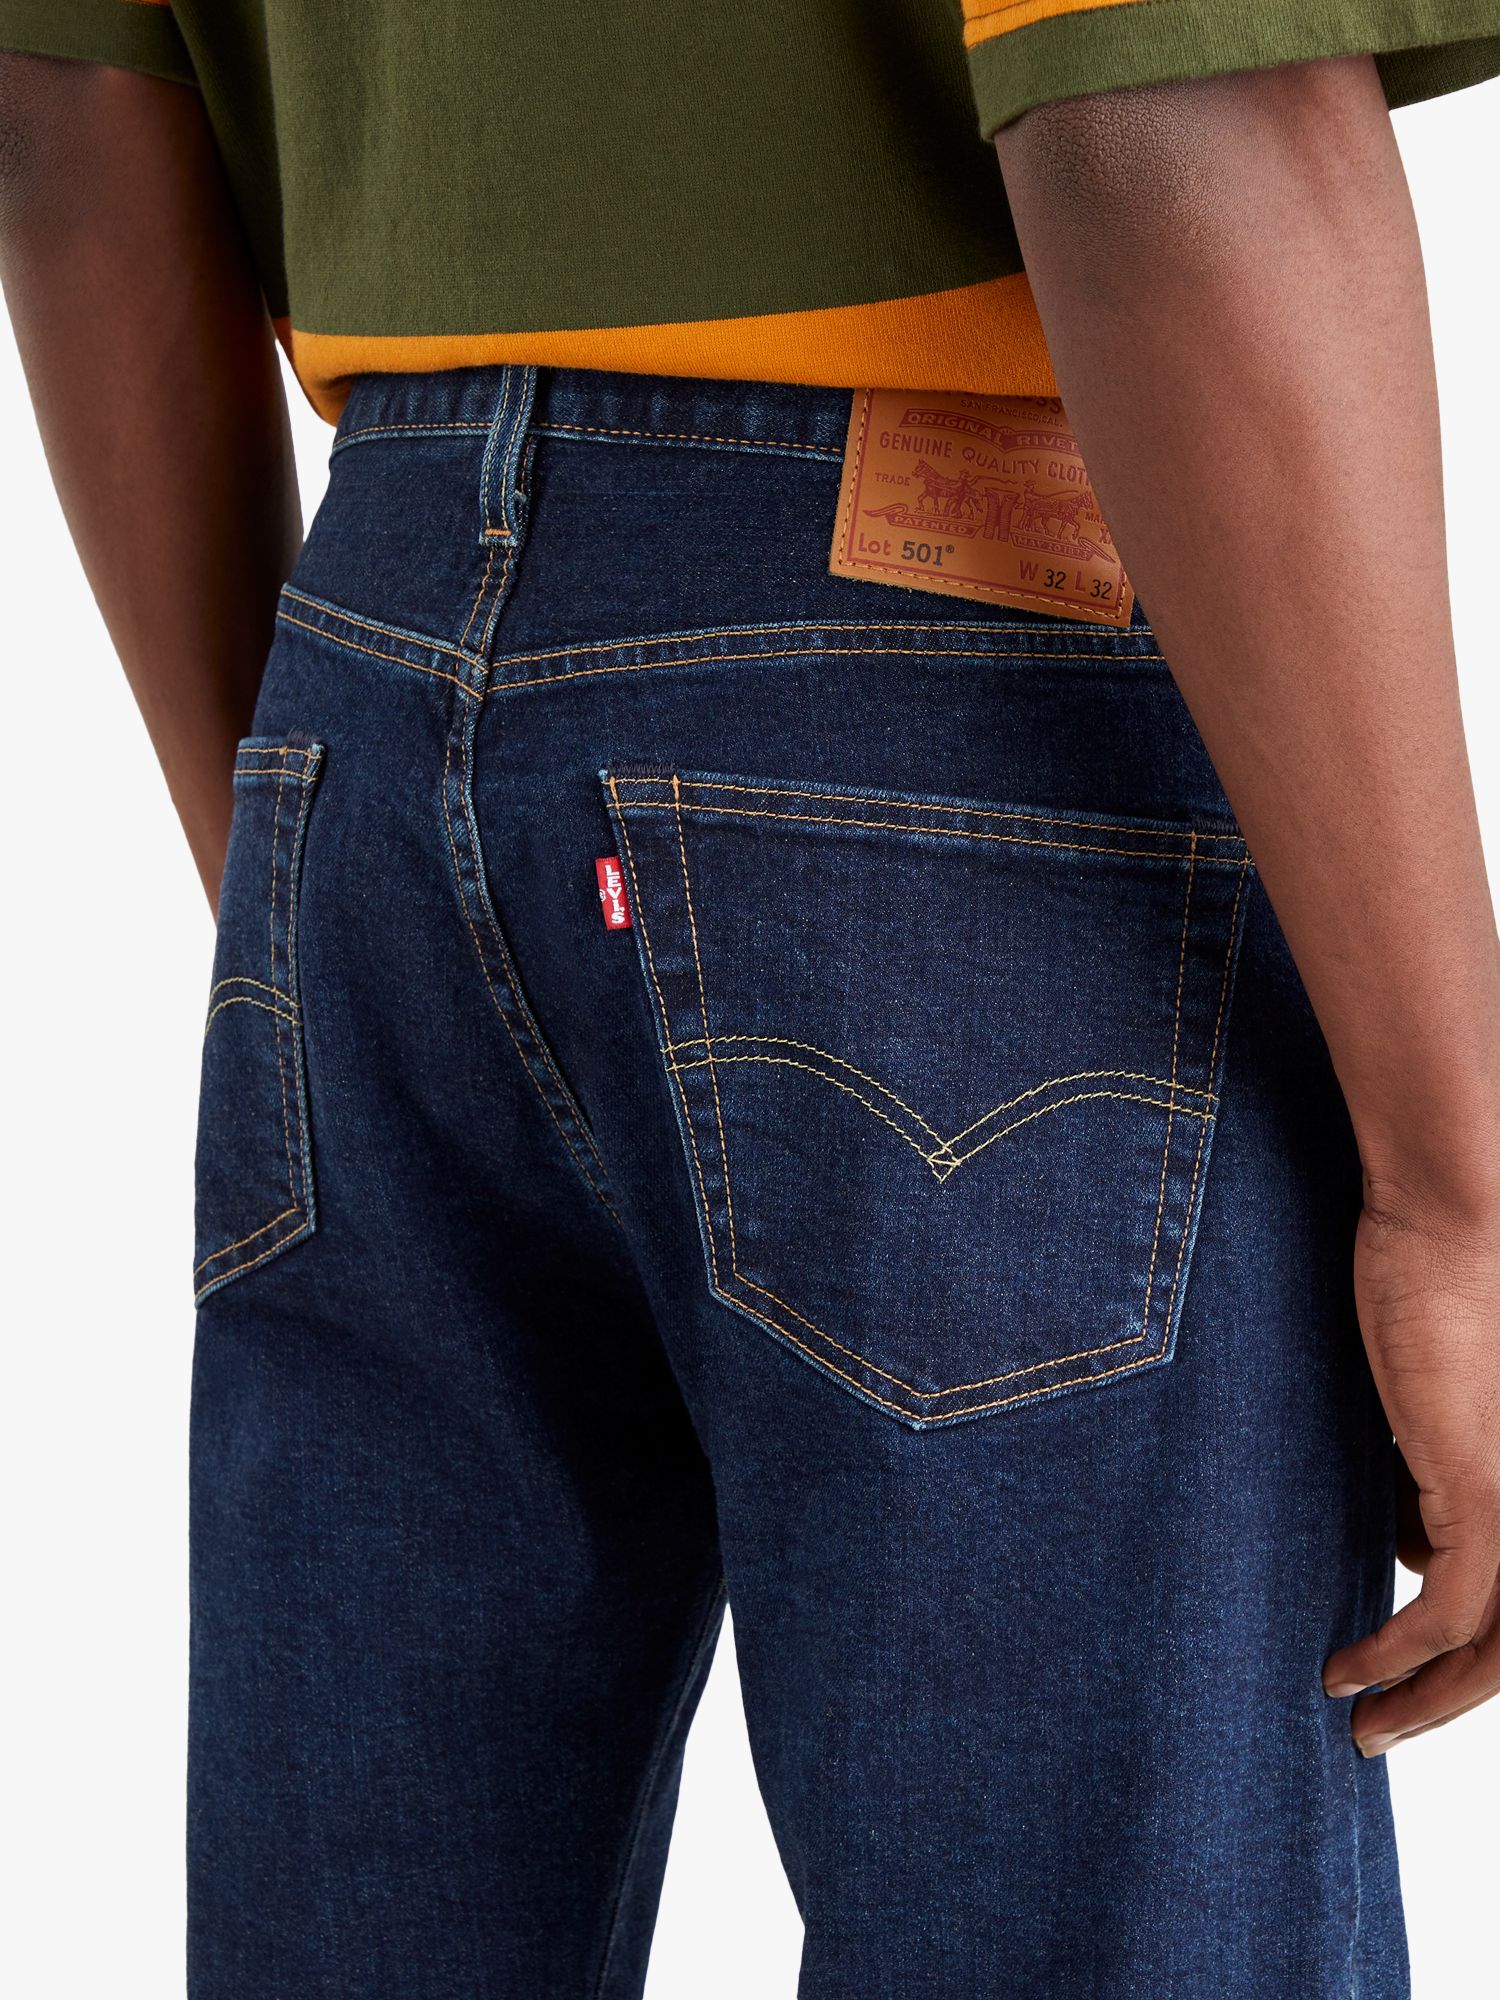 Fysica Ouderling Verslagen Levi's 501 Originals Established Jeans, Blue at John Lewis & Partners